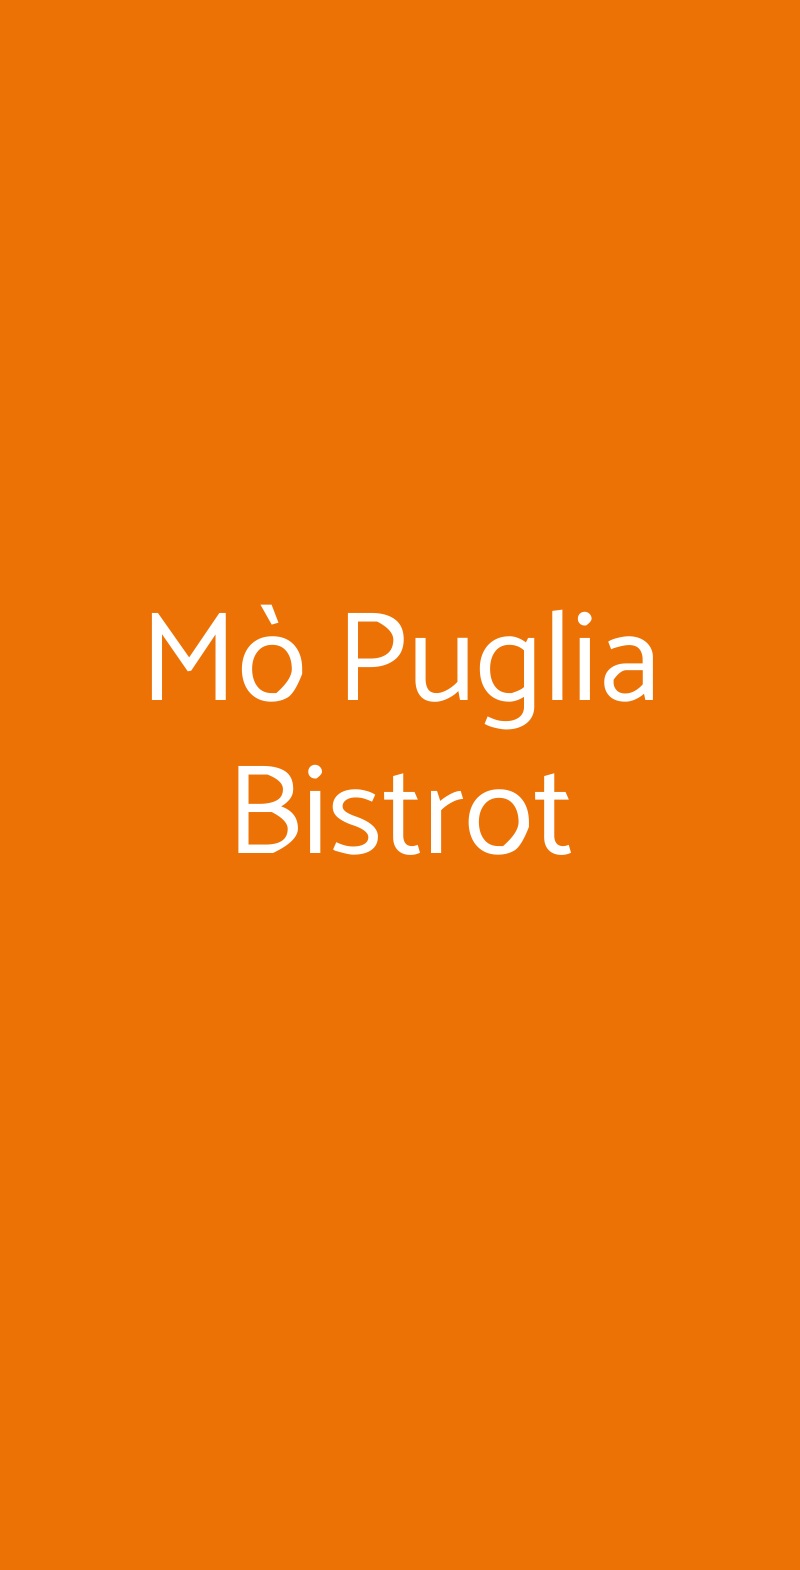 Mò  Puglia Bistrot Milano menù 1 pagina